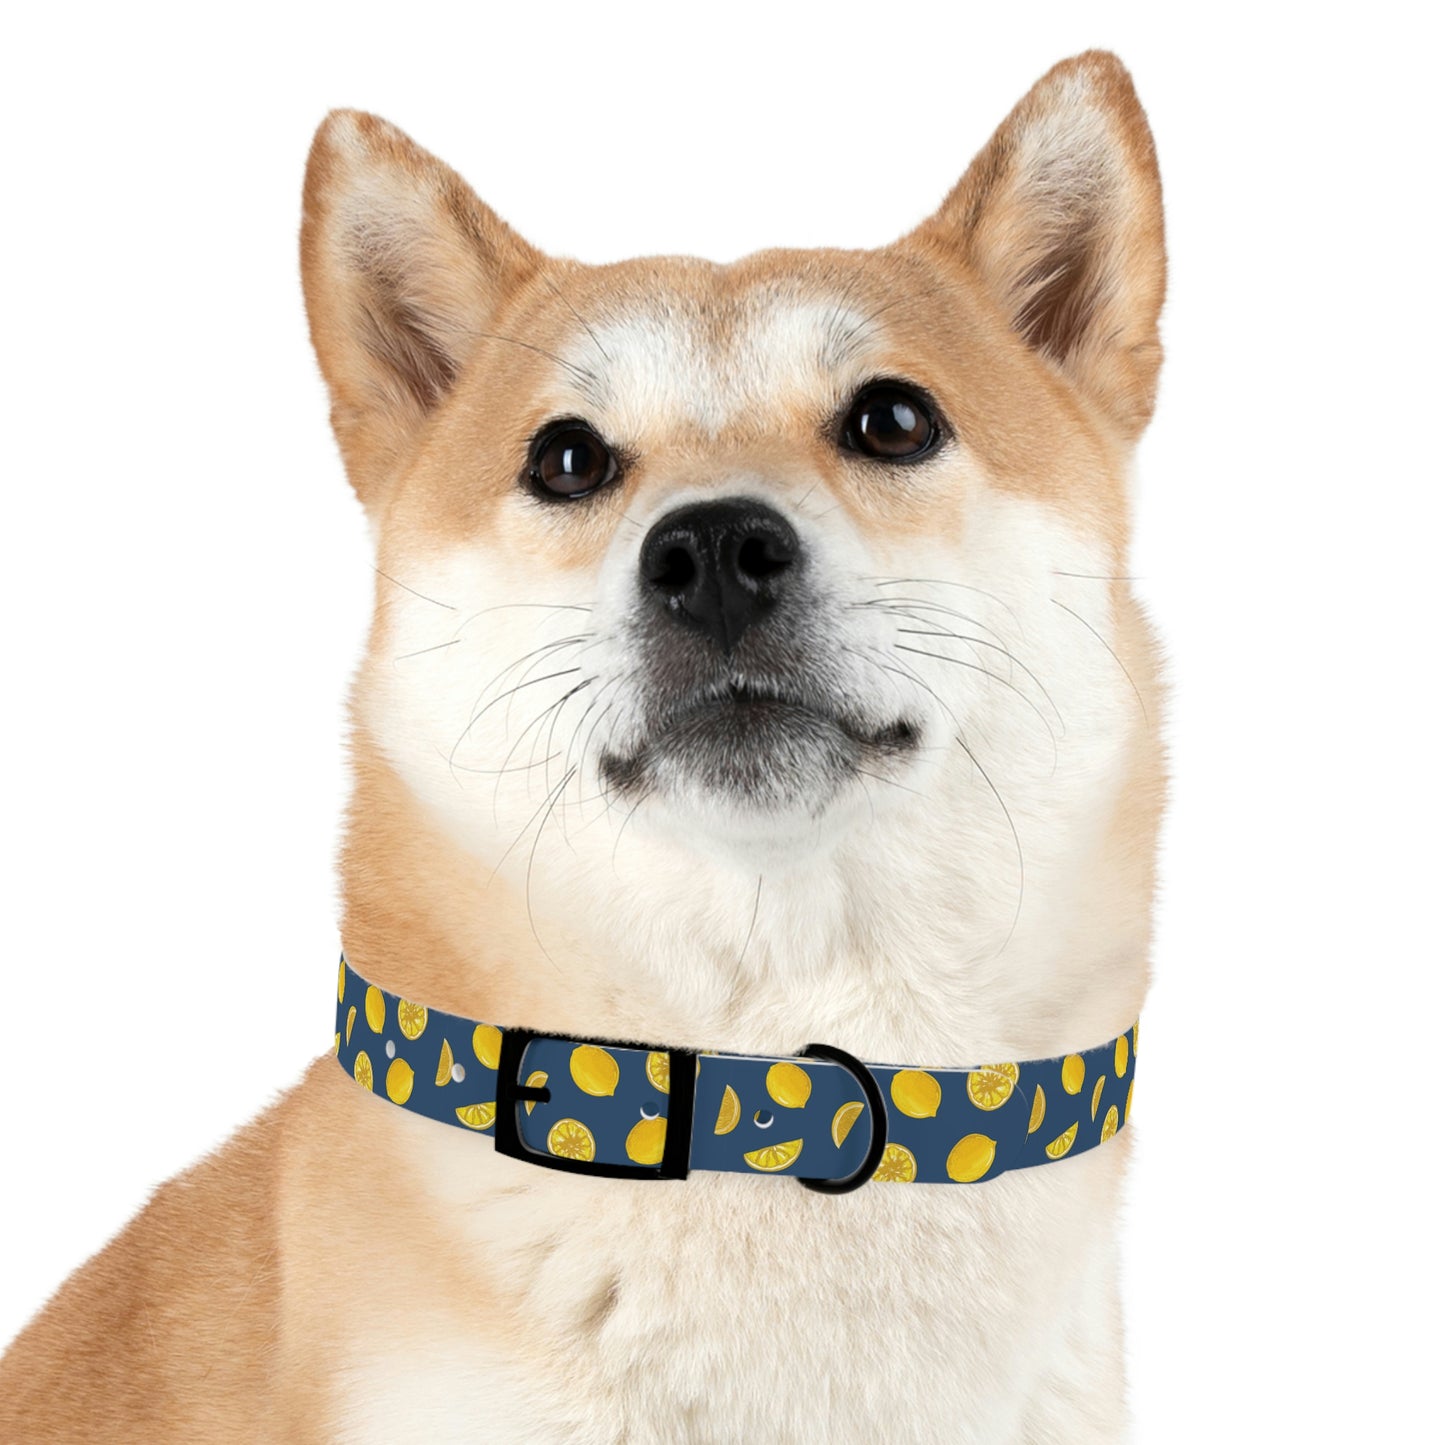 When Life Gives You Lemons - Dog Collar